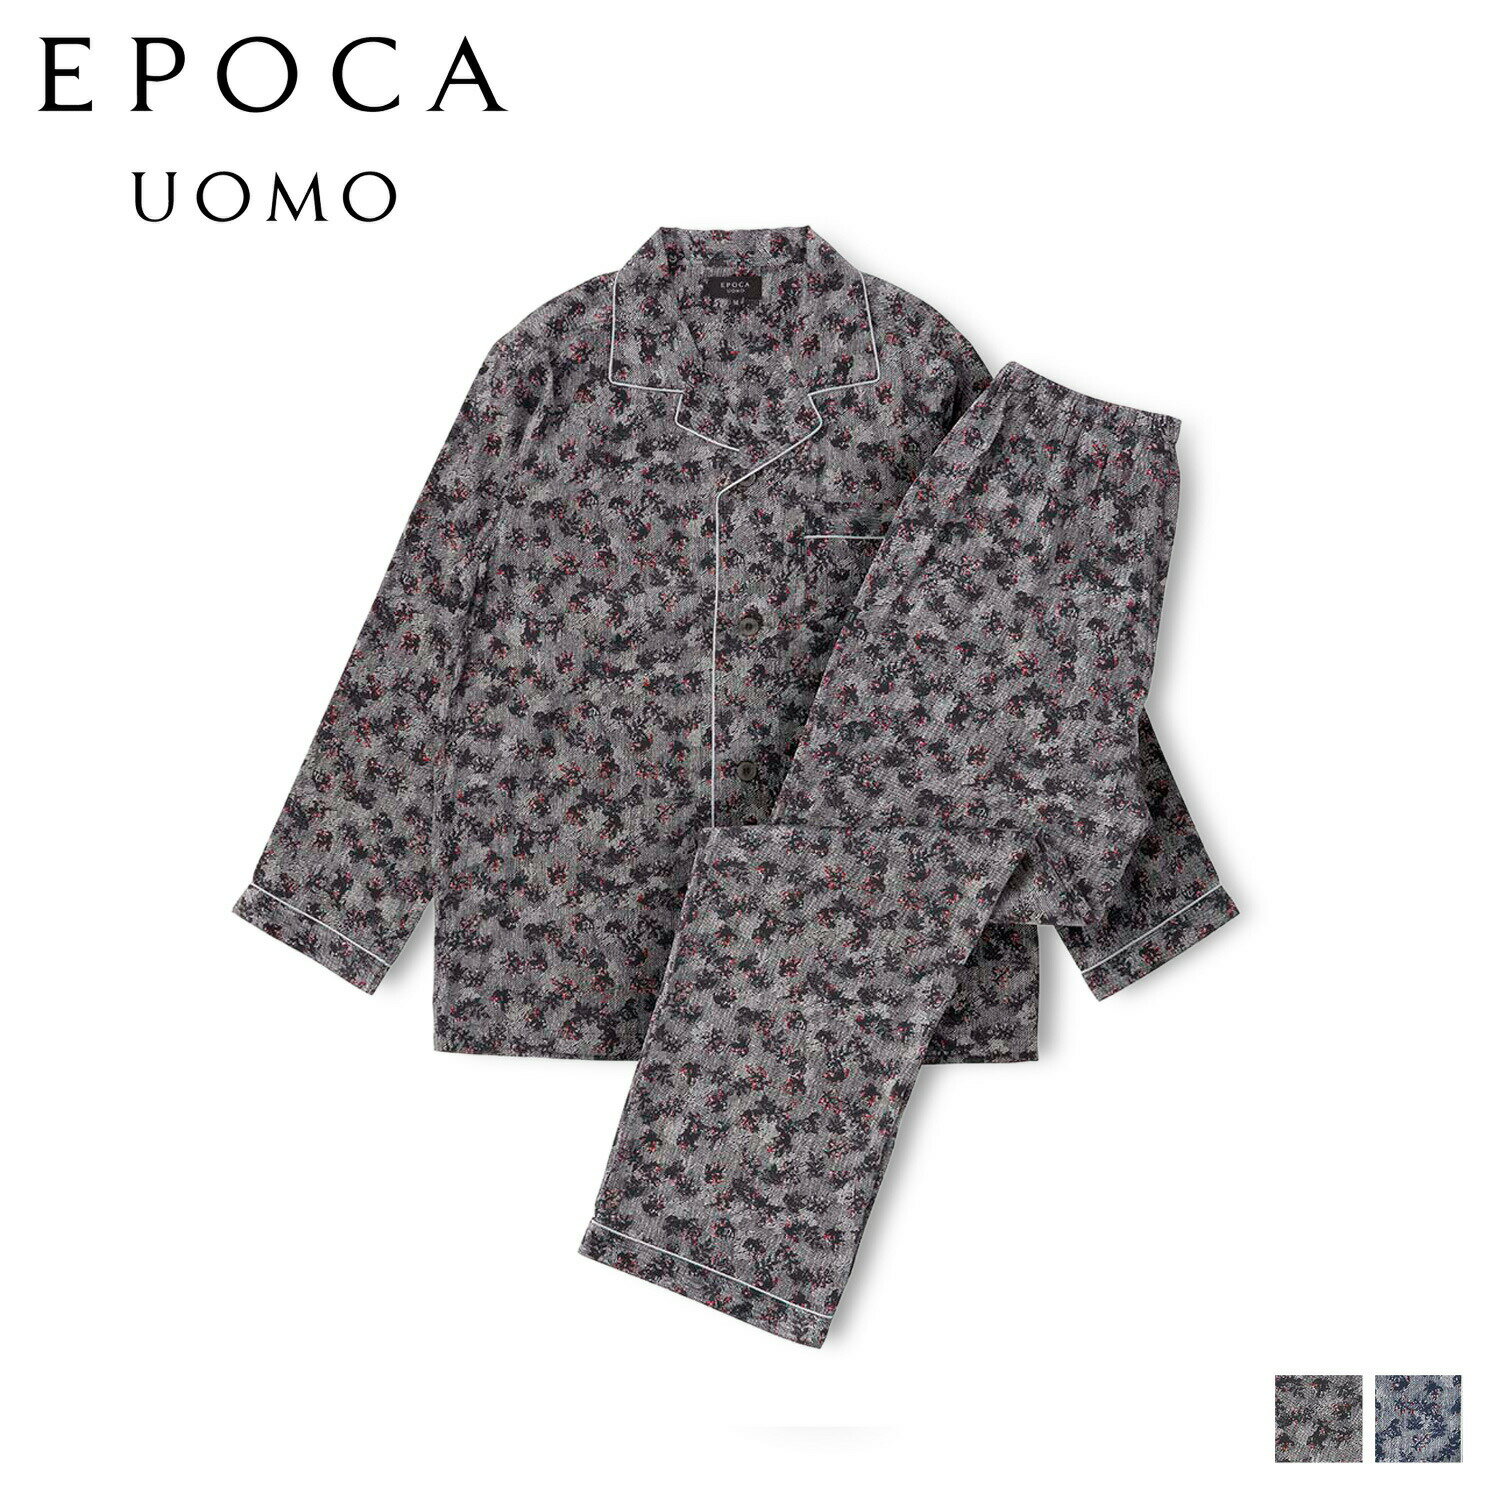 EPOCA UOMO シルク テーラードパジャマ エポカ ウォモ ルームウェア 部屋着 パジャマ セットアップ ナイトウェア メンズ 暖かい 上着 ブラック ネイビー 黒 0344-80